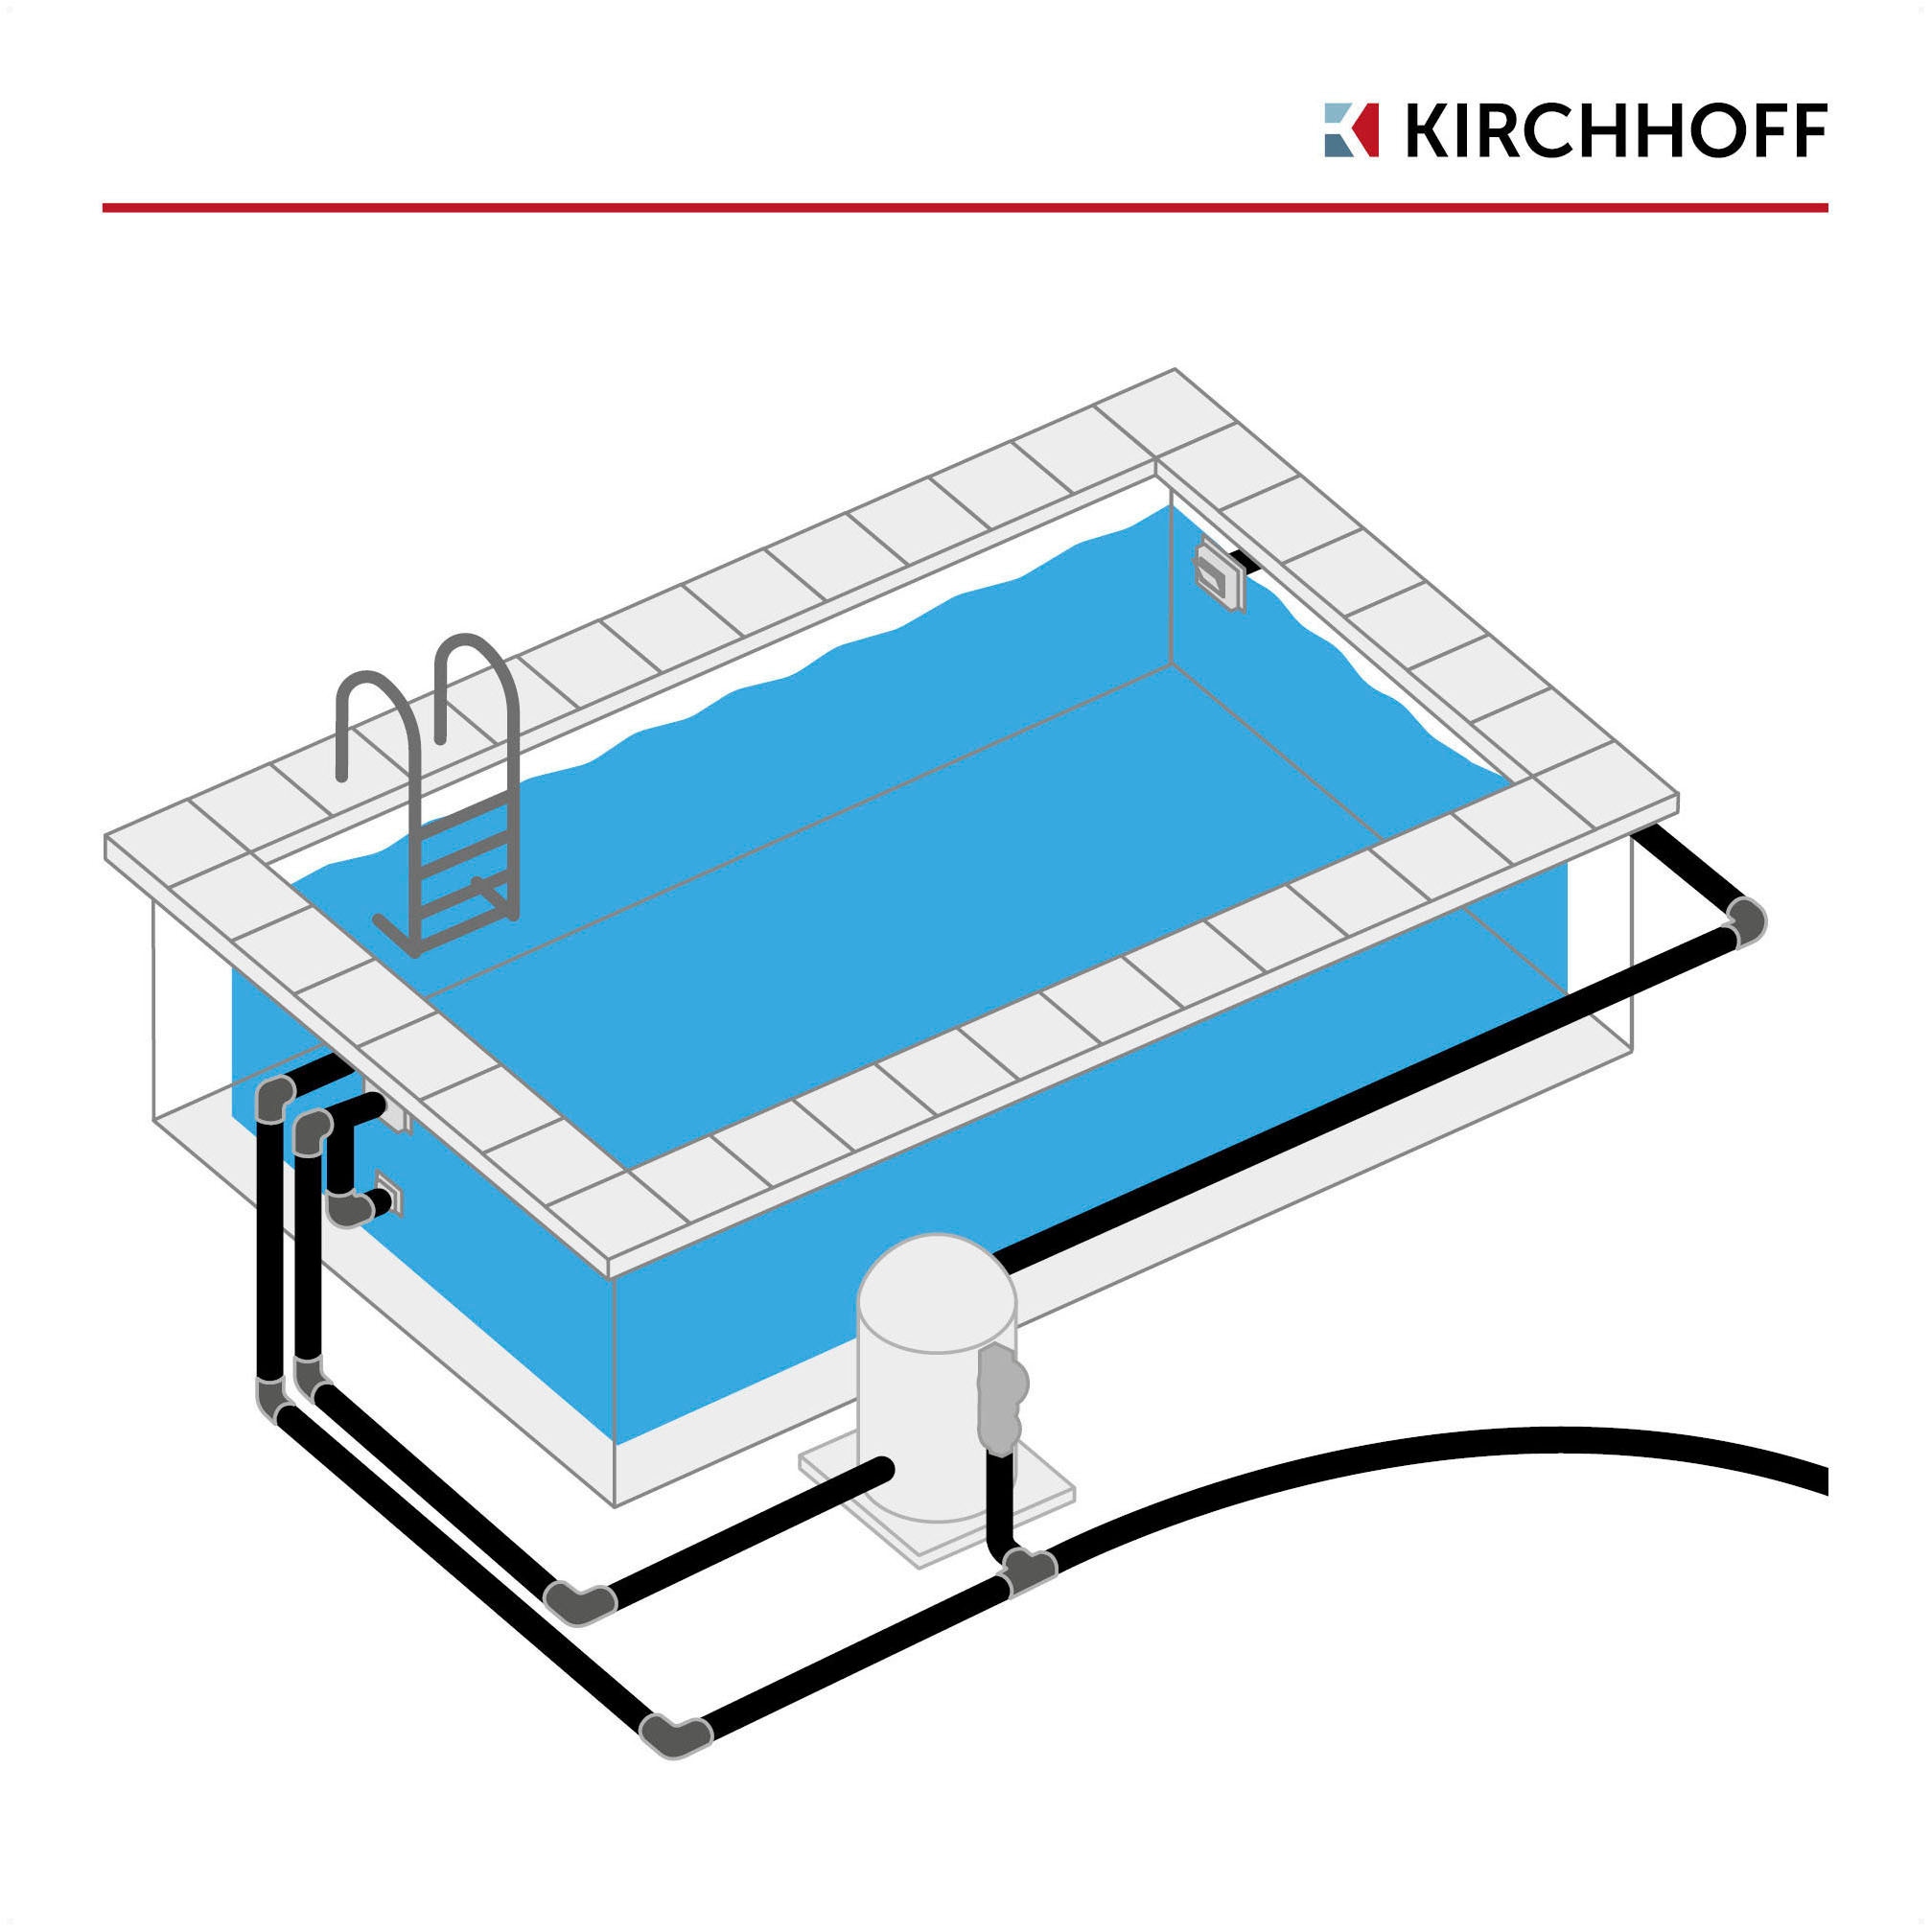 Kirchhoff Muffenstopfen »PVC-Druckrohr«, für Pool & Teich, PN 12,5, 16 bar, besonders beständig